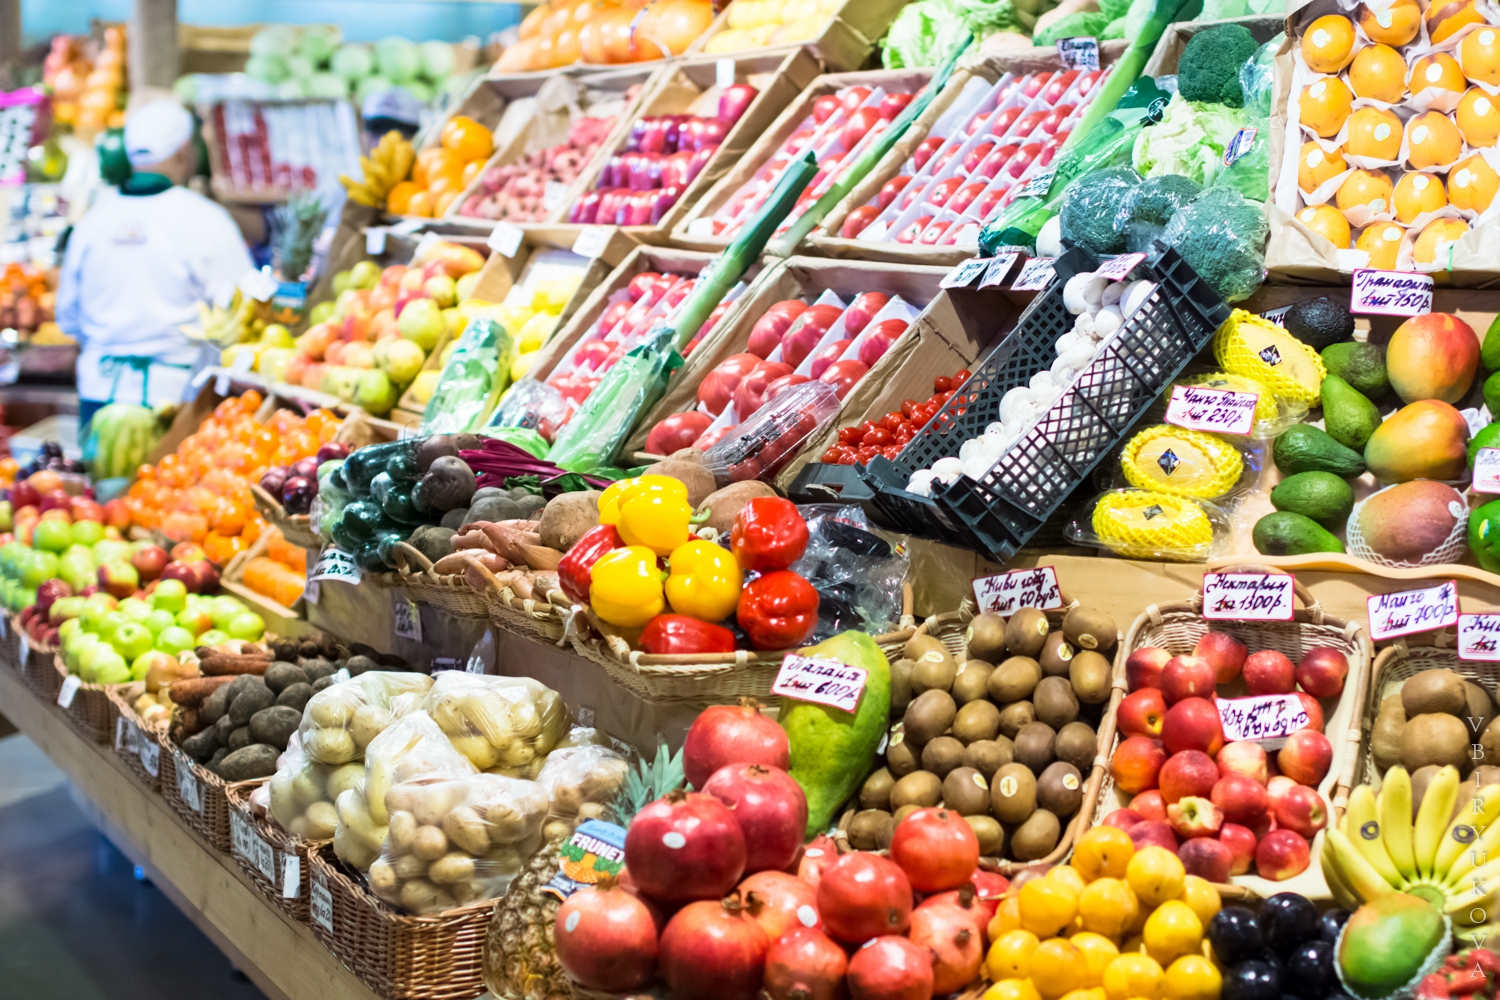 “Ölkə bazarında 90% məhsullar GMO-dur” – AQTA kimin lobbiçiliyini aparır? 